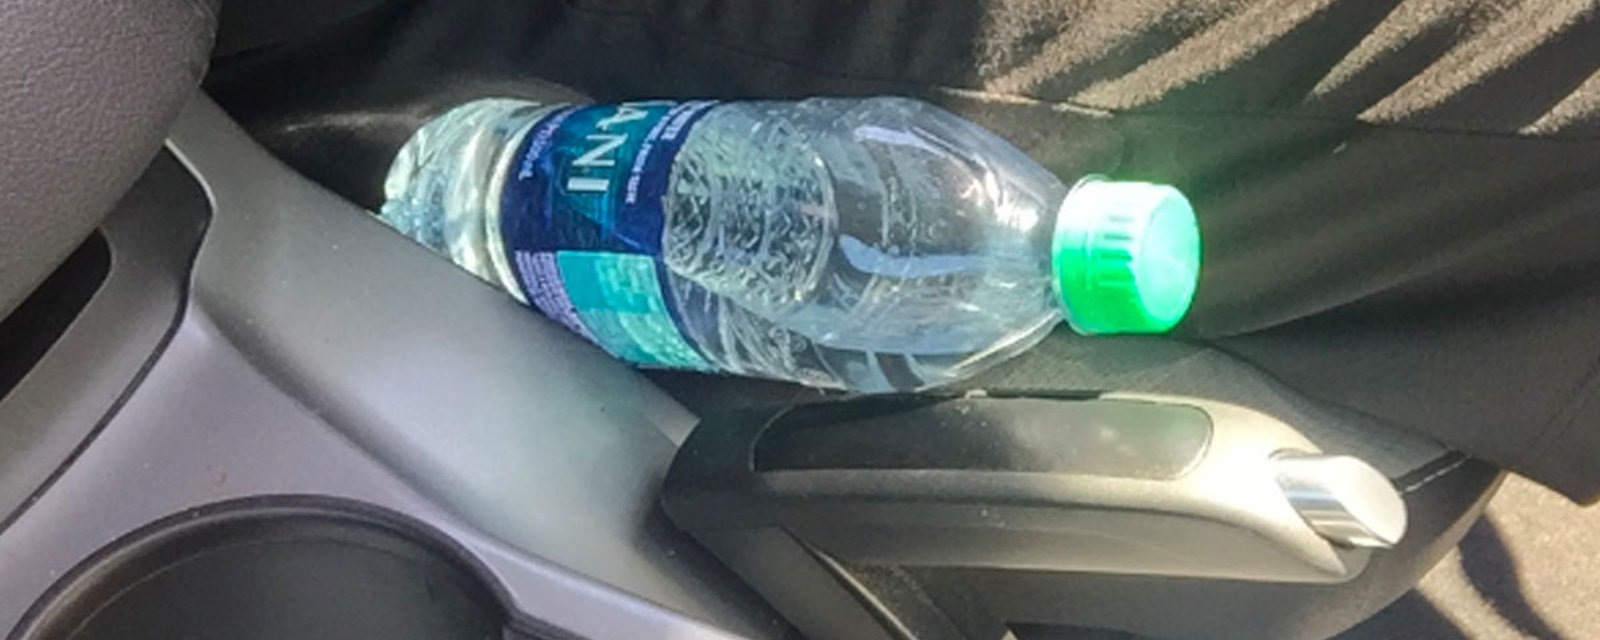 Avec le retour du beau temps, les pompiers lancent un avertissement très important concernant les bouteilles d'eau dans les voitures.